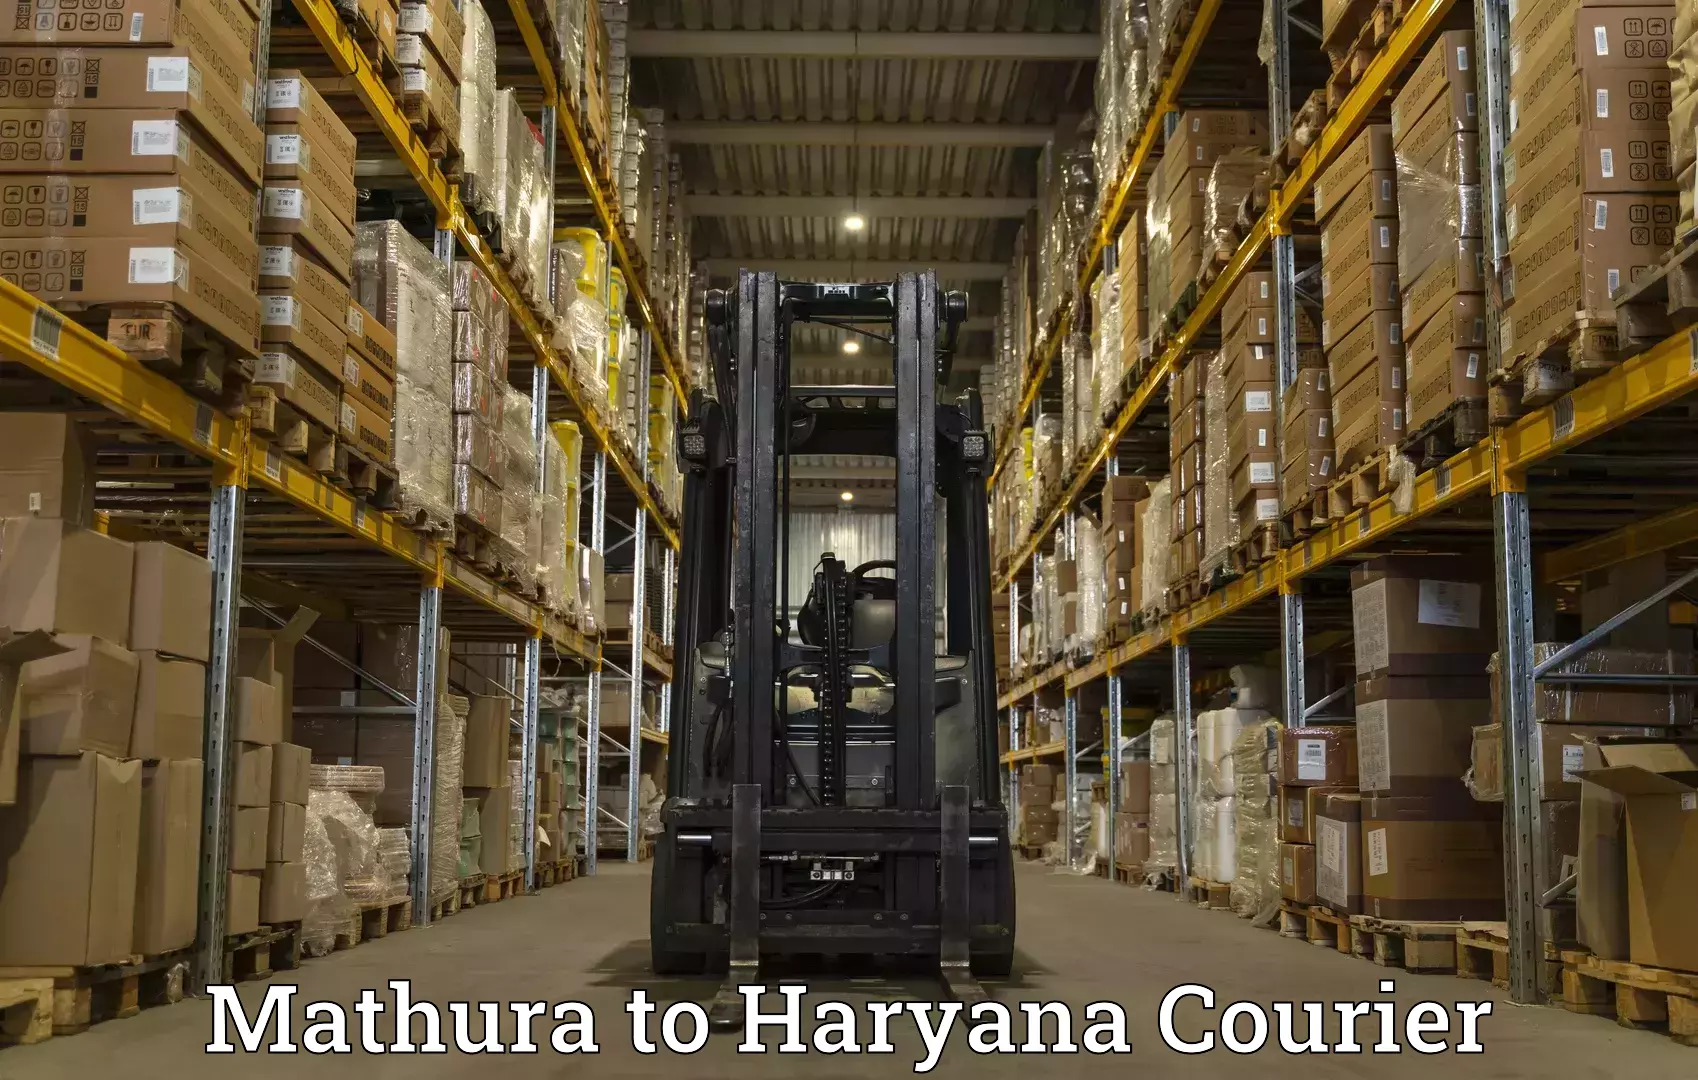 Courier service comparison Mathura to Yamuna Nagar